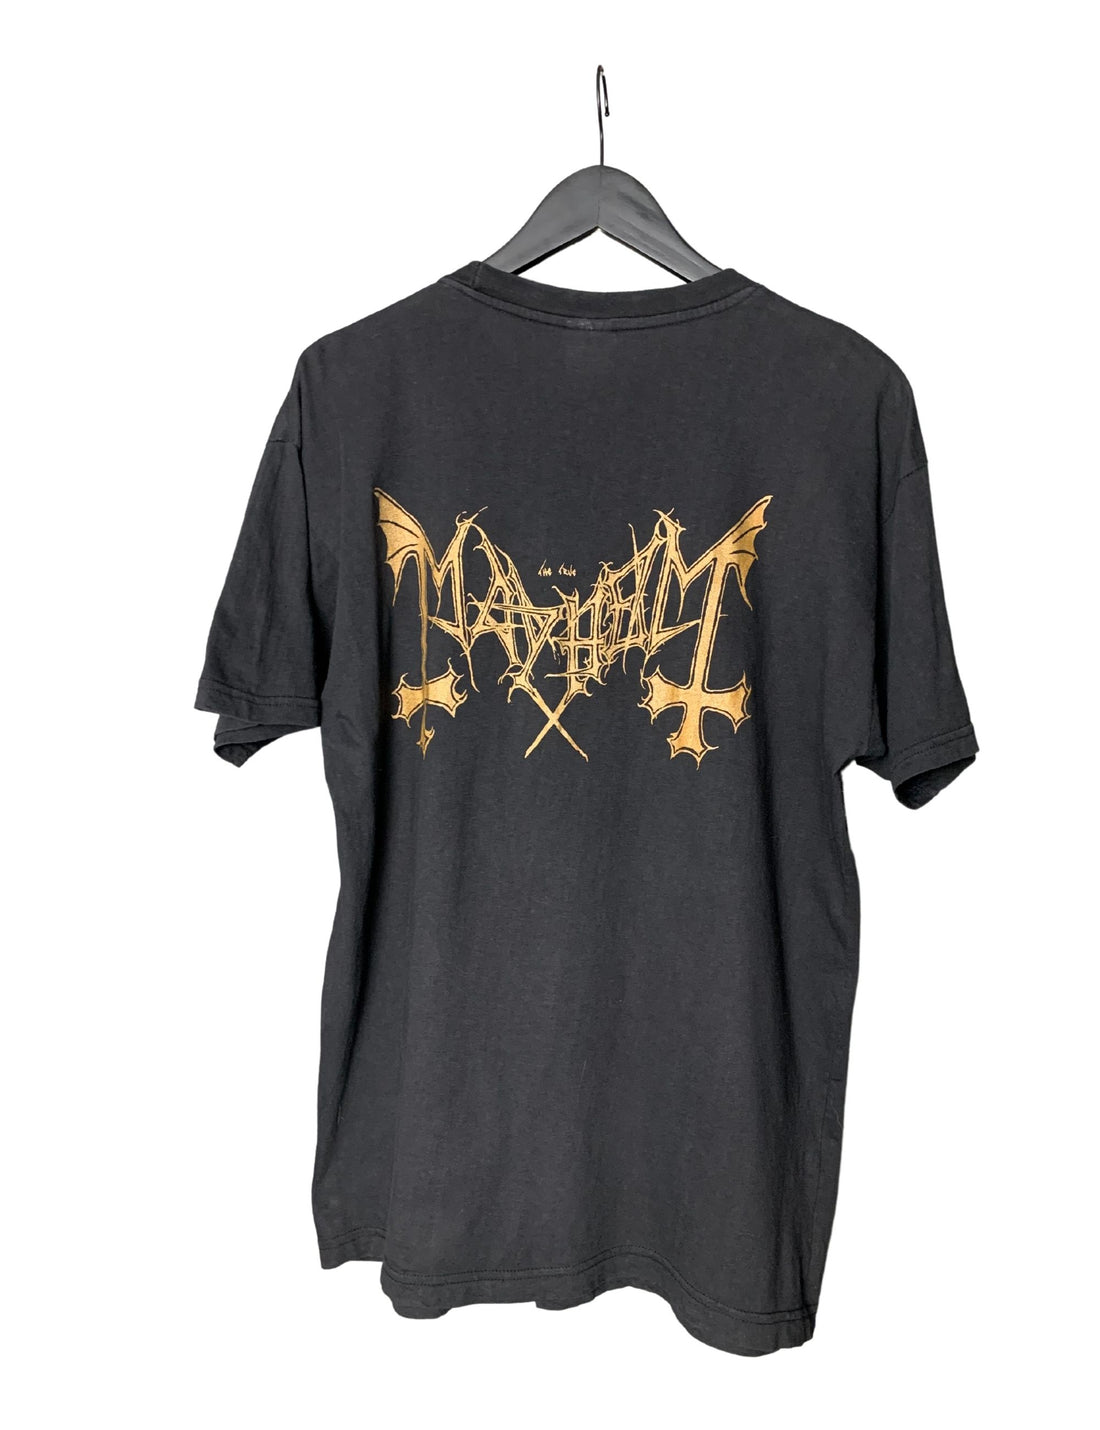 Mayhem 1993 Deathcrush Vintage T-Shirt